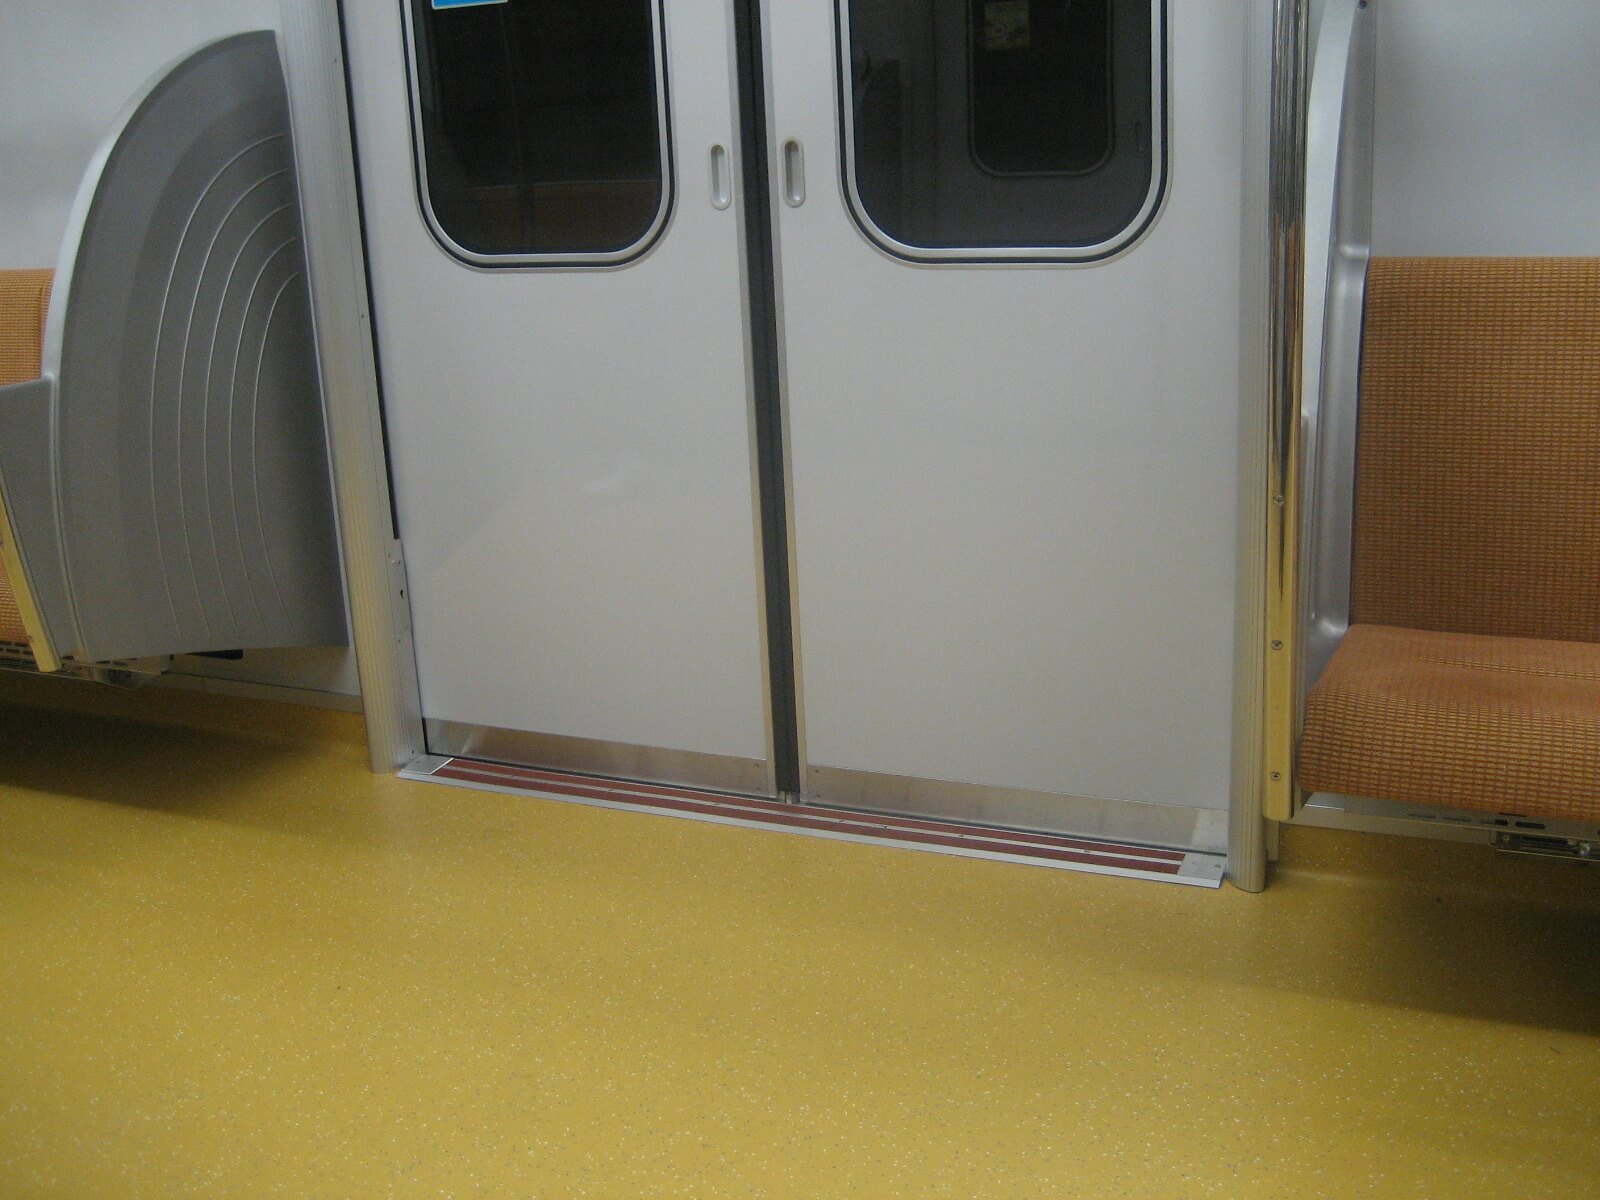 東京メトロ地下鉄車両の見切材として各車両ドアの床面に設置されたハイブリッドストーン アベイラス アンプロップをドアが閉まった状態で車両内から見た様子